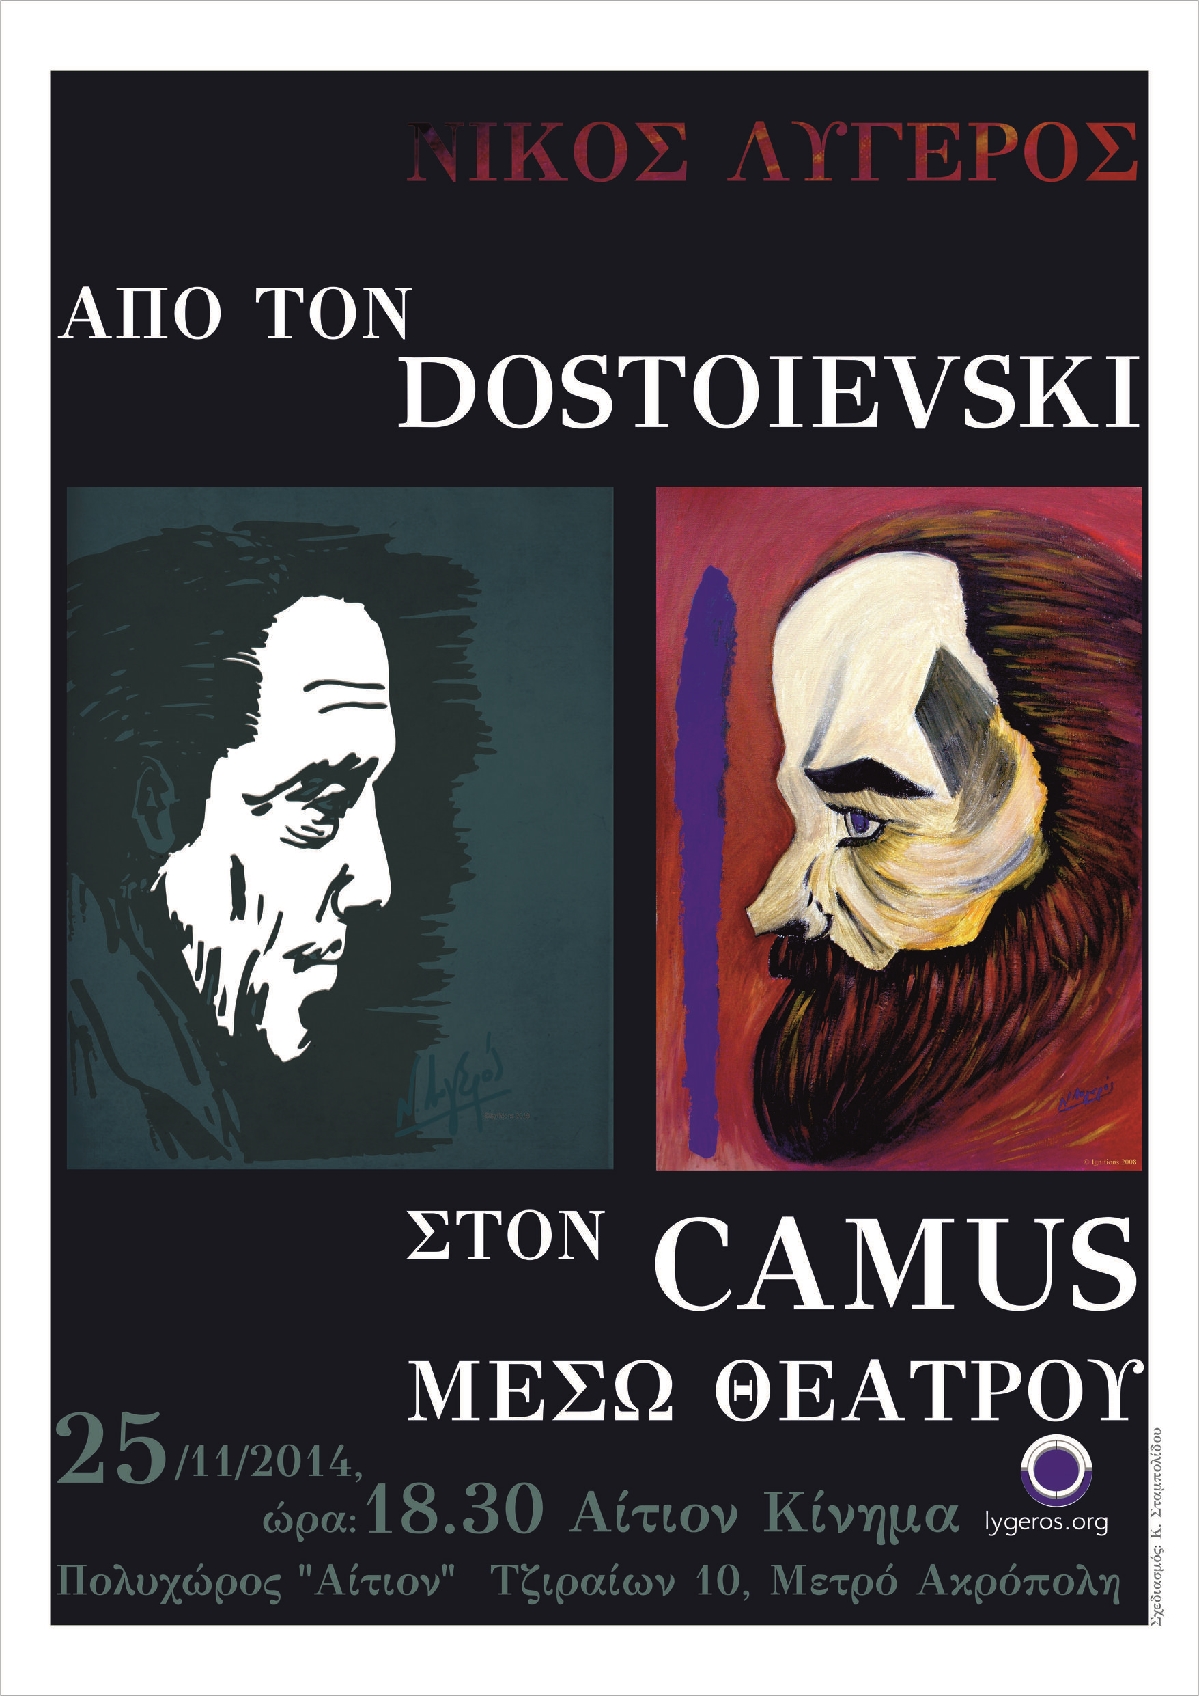 Από τον Dostoievski στον Camus μέσω θεάτρου